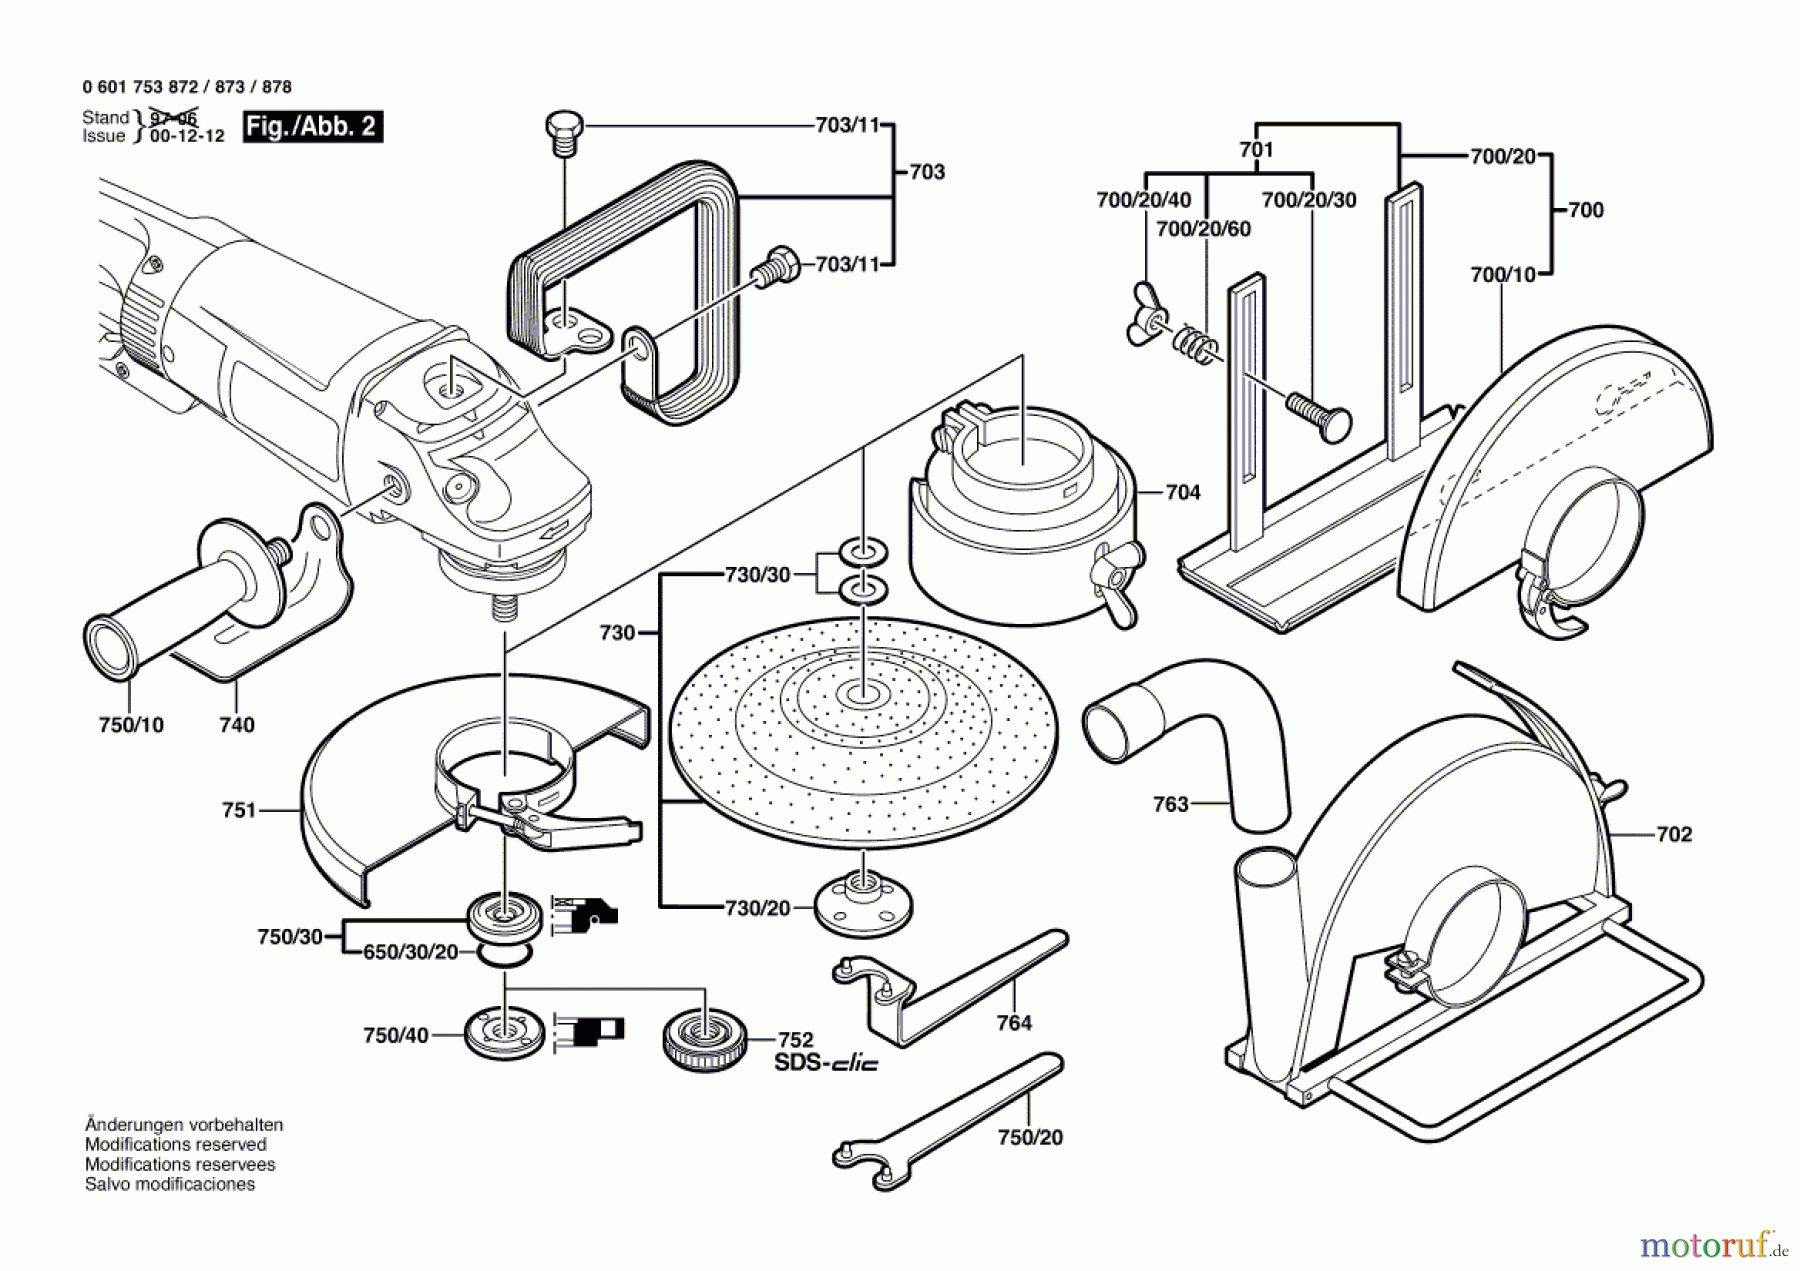  Bosch Werkzeug Winkelschleifer GWS 23-180 J Seite 2